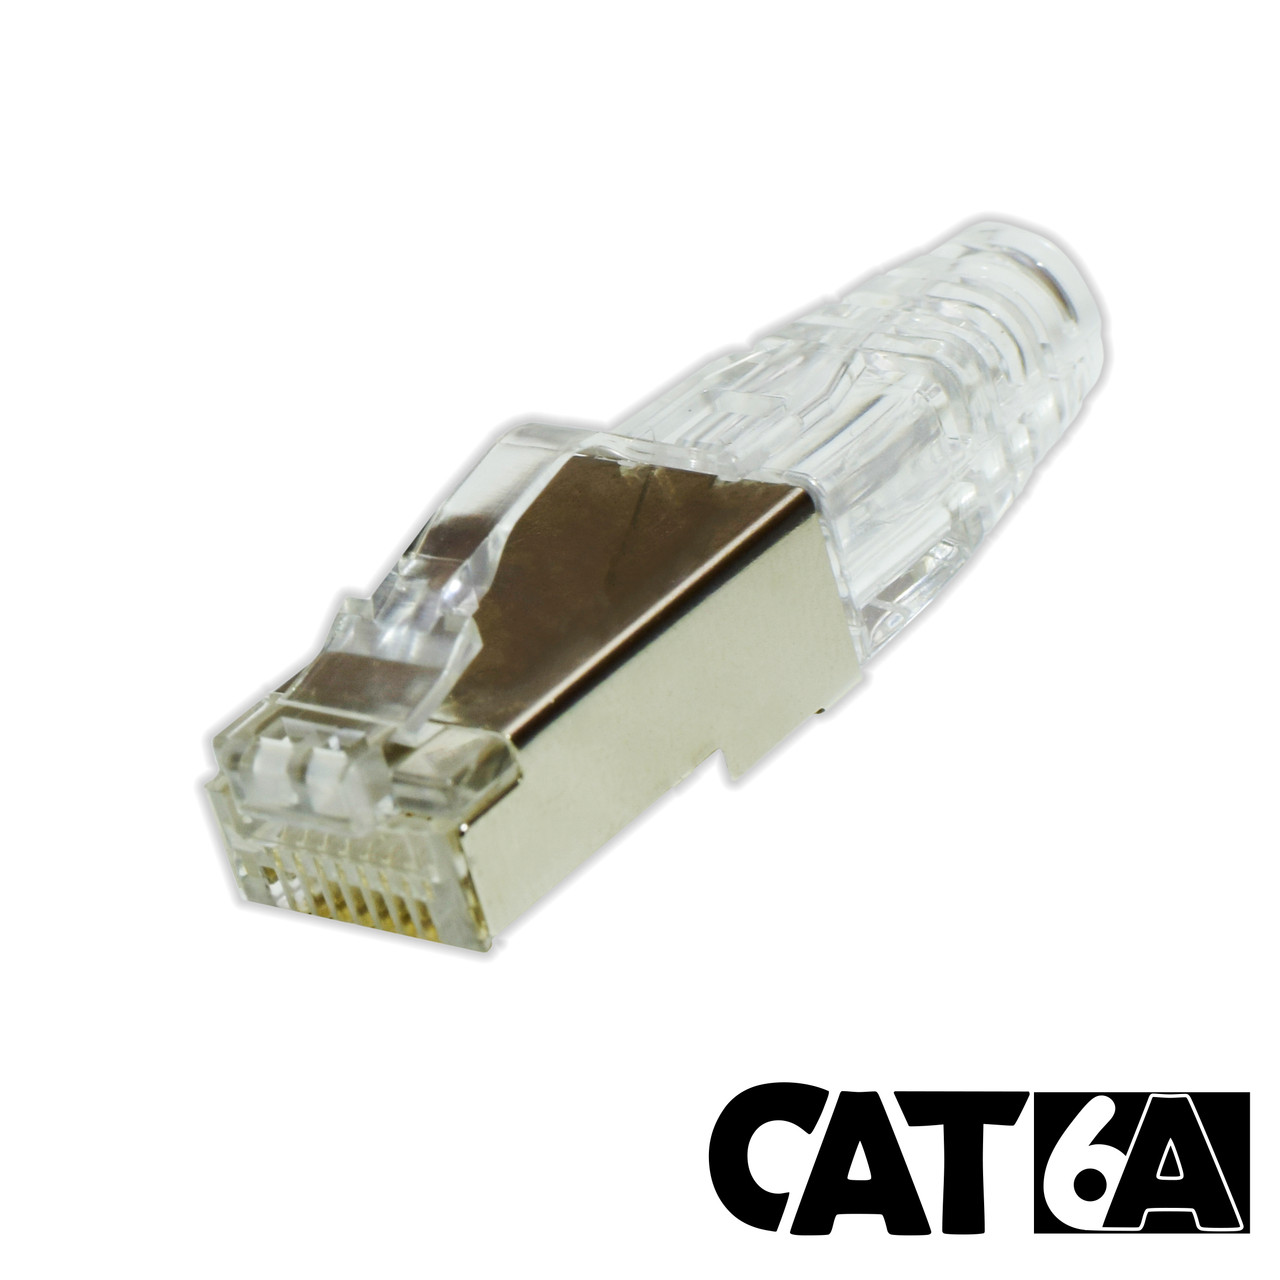  CableCreation RJ45 Connectors, Cat 6A RJ45 Modular